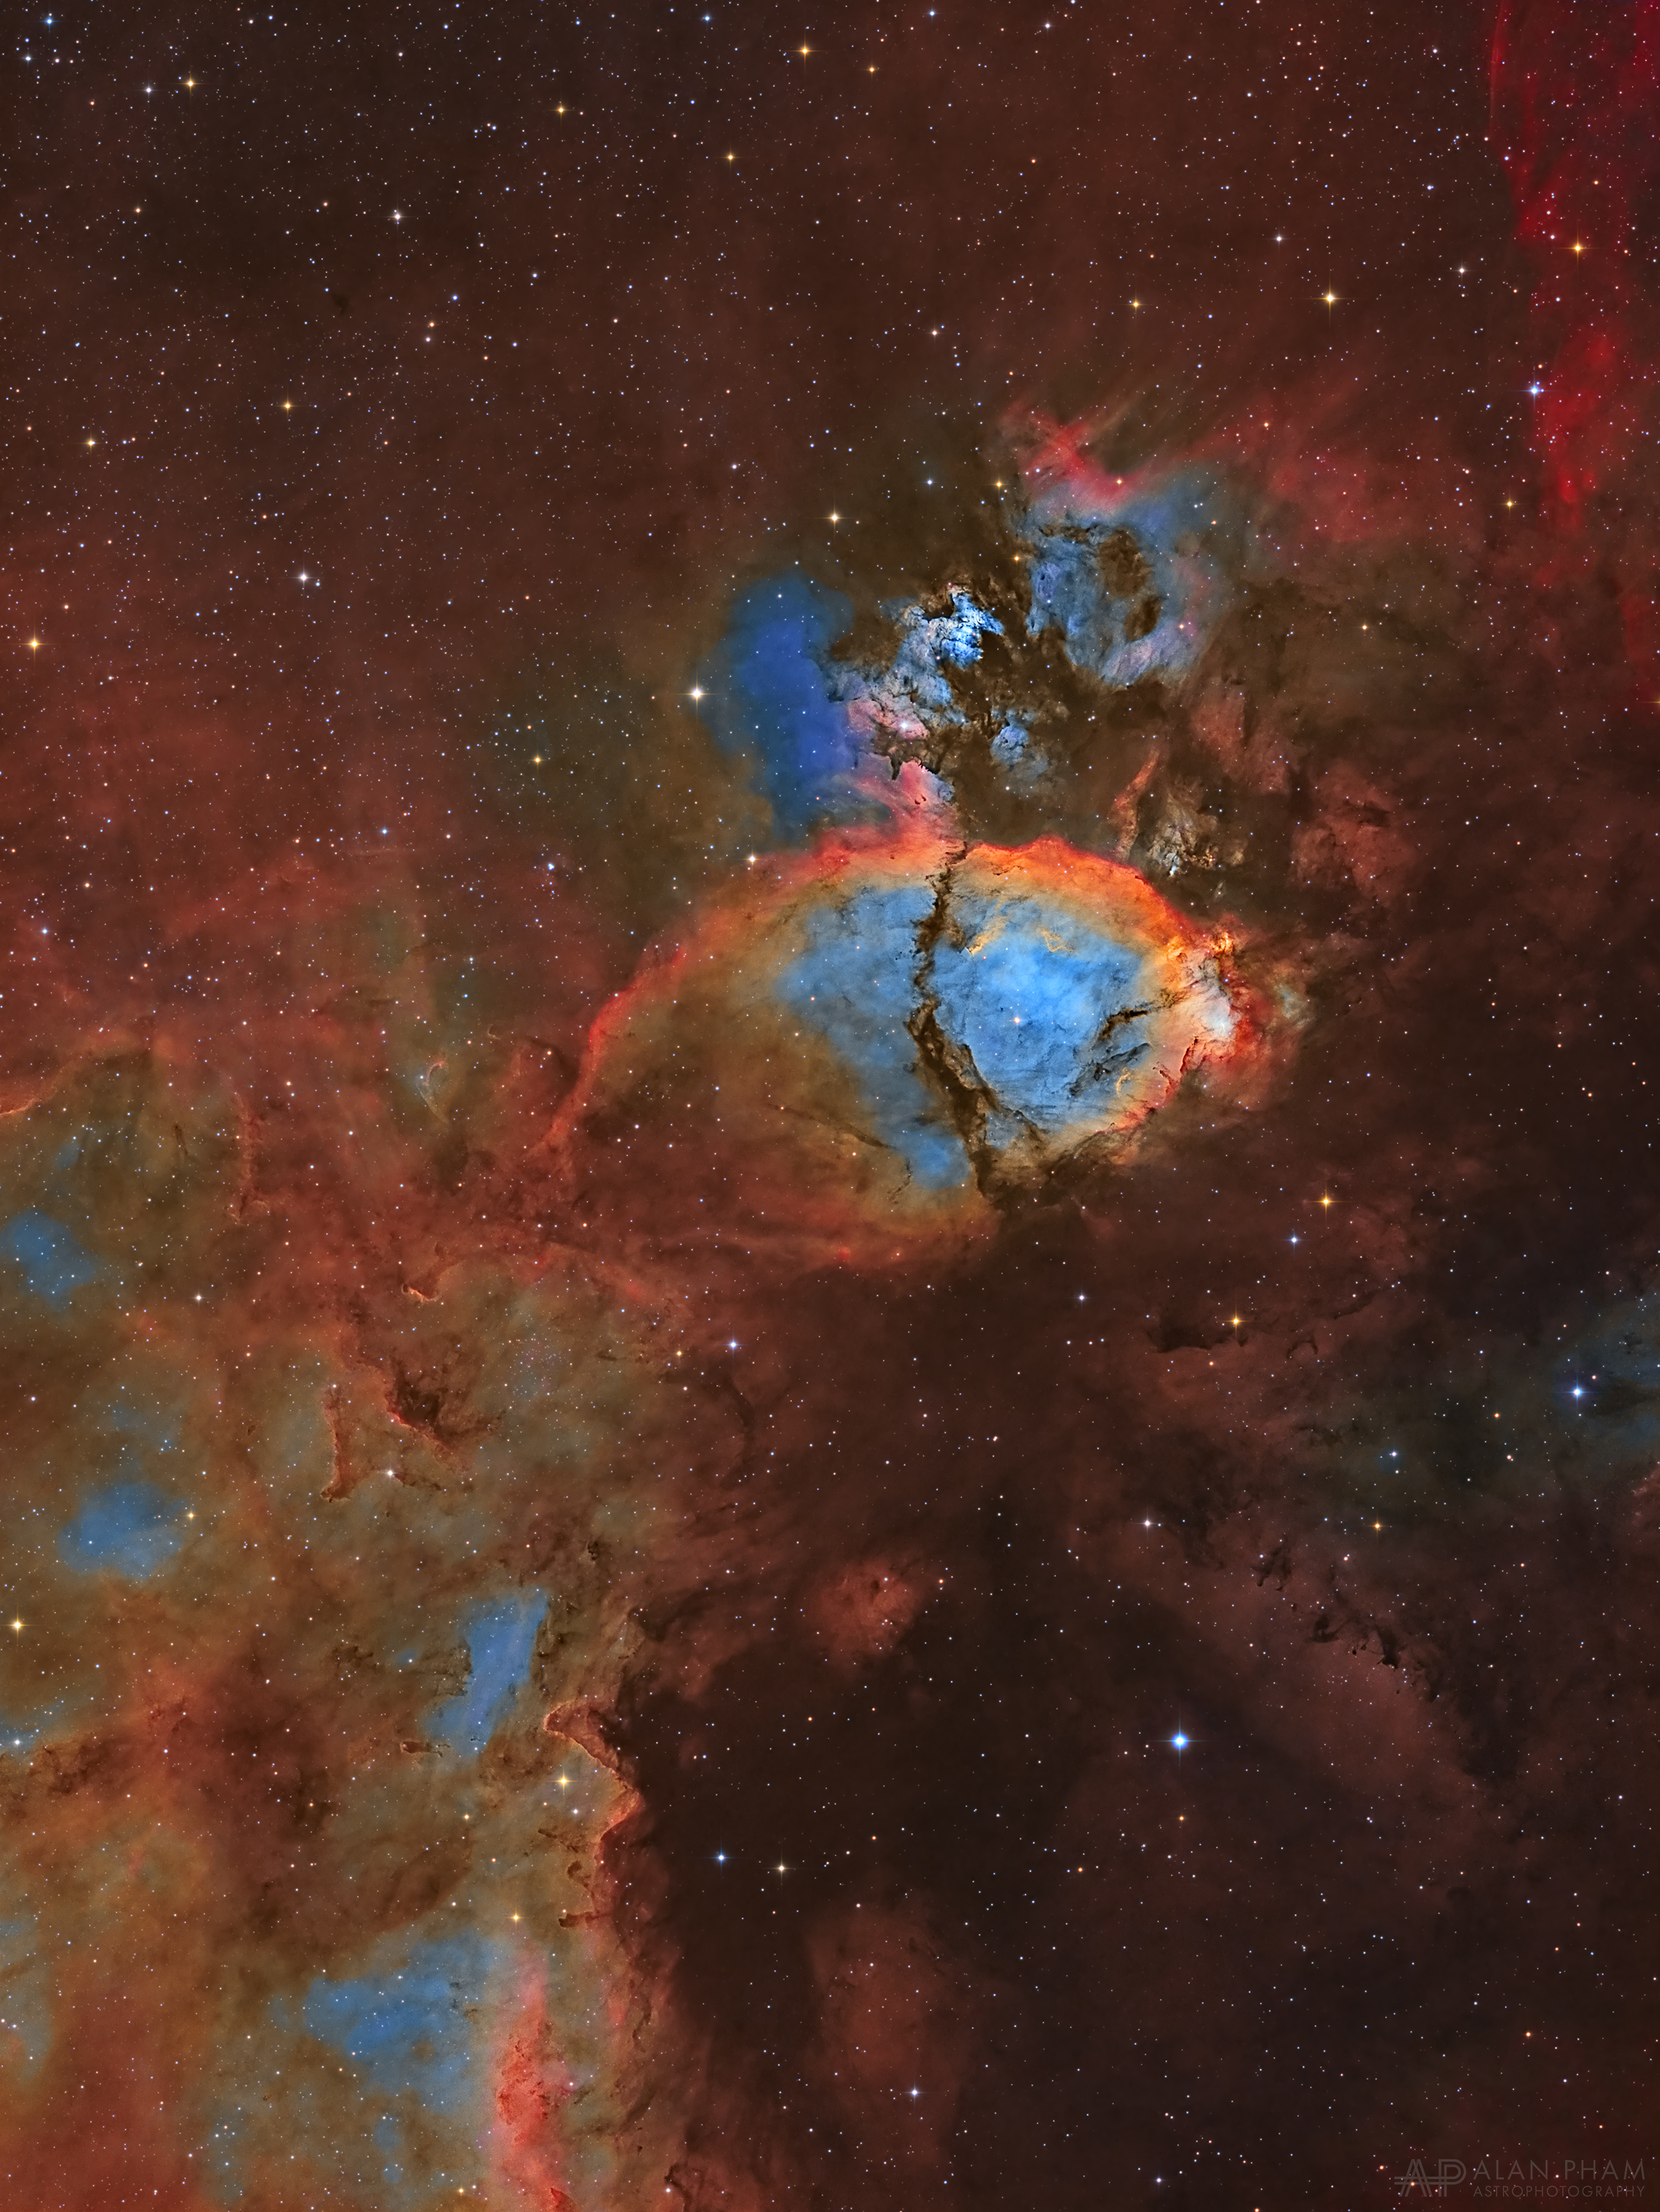  2019年8月2日<br />IC 1795: 魚頭星雲 <br />影像提供與版權: Alan Pham <br />說明: 對某些人來說，這團星雲形似一顆魚頭。 這幅彩色星空影像，呈現了位在北天仙后座的IC 1795之輝光氣體和不透光塵埃雲。 星雲的色彩則按照哈伯配色表，把源自氧、氫和硫原子的窄波段輻射依次渲染為藍、綠和紅等色澤；接著，數據再和透過寬波段濾鏡拍攝的影像融合成這張照片。 在天空中，IC 1795離著名的英仙座雙星團不遠，本身則緊鄰著IC 1805 (心臟星雲)，是一個大分子雲邊緣的恆星誕生區複合體之一部分。<br /> 